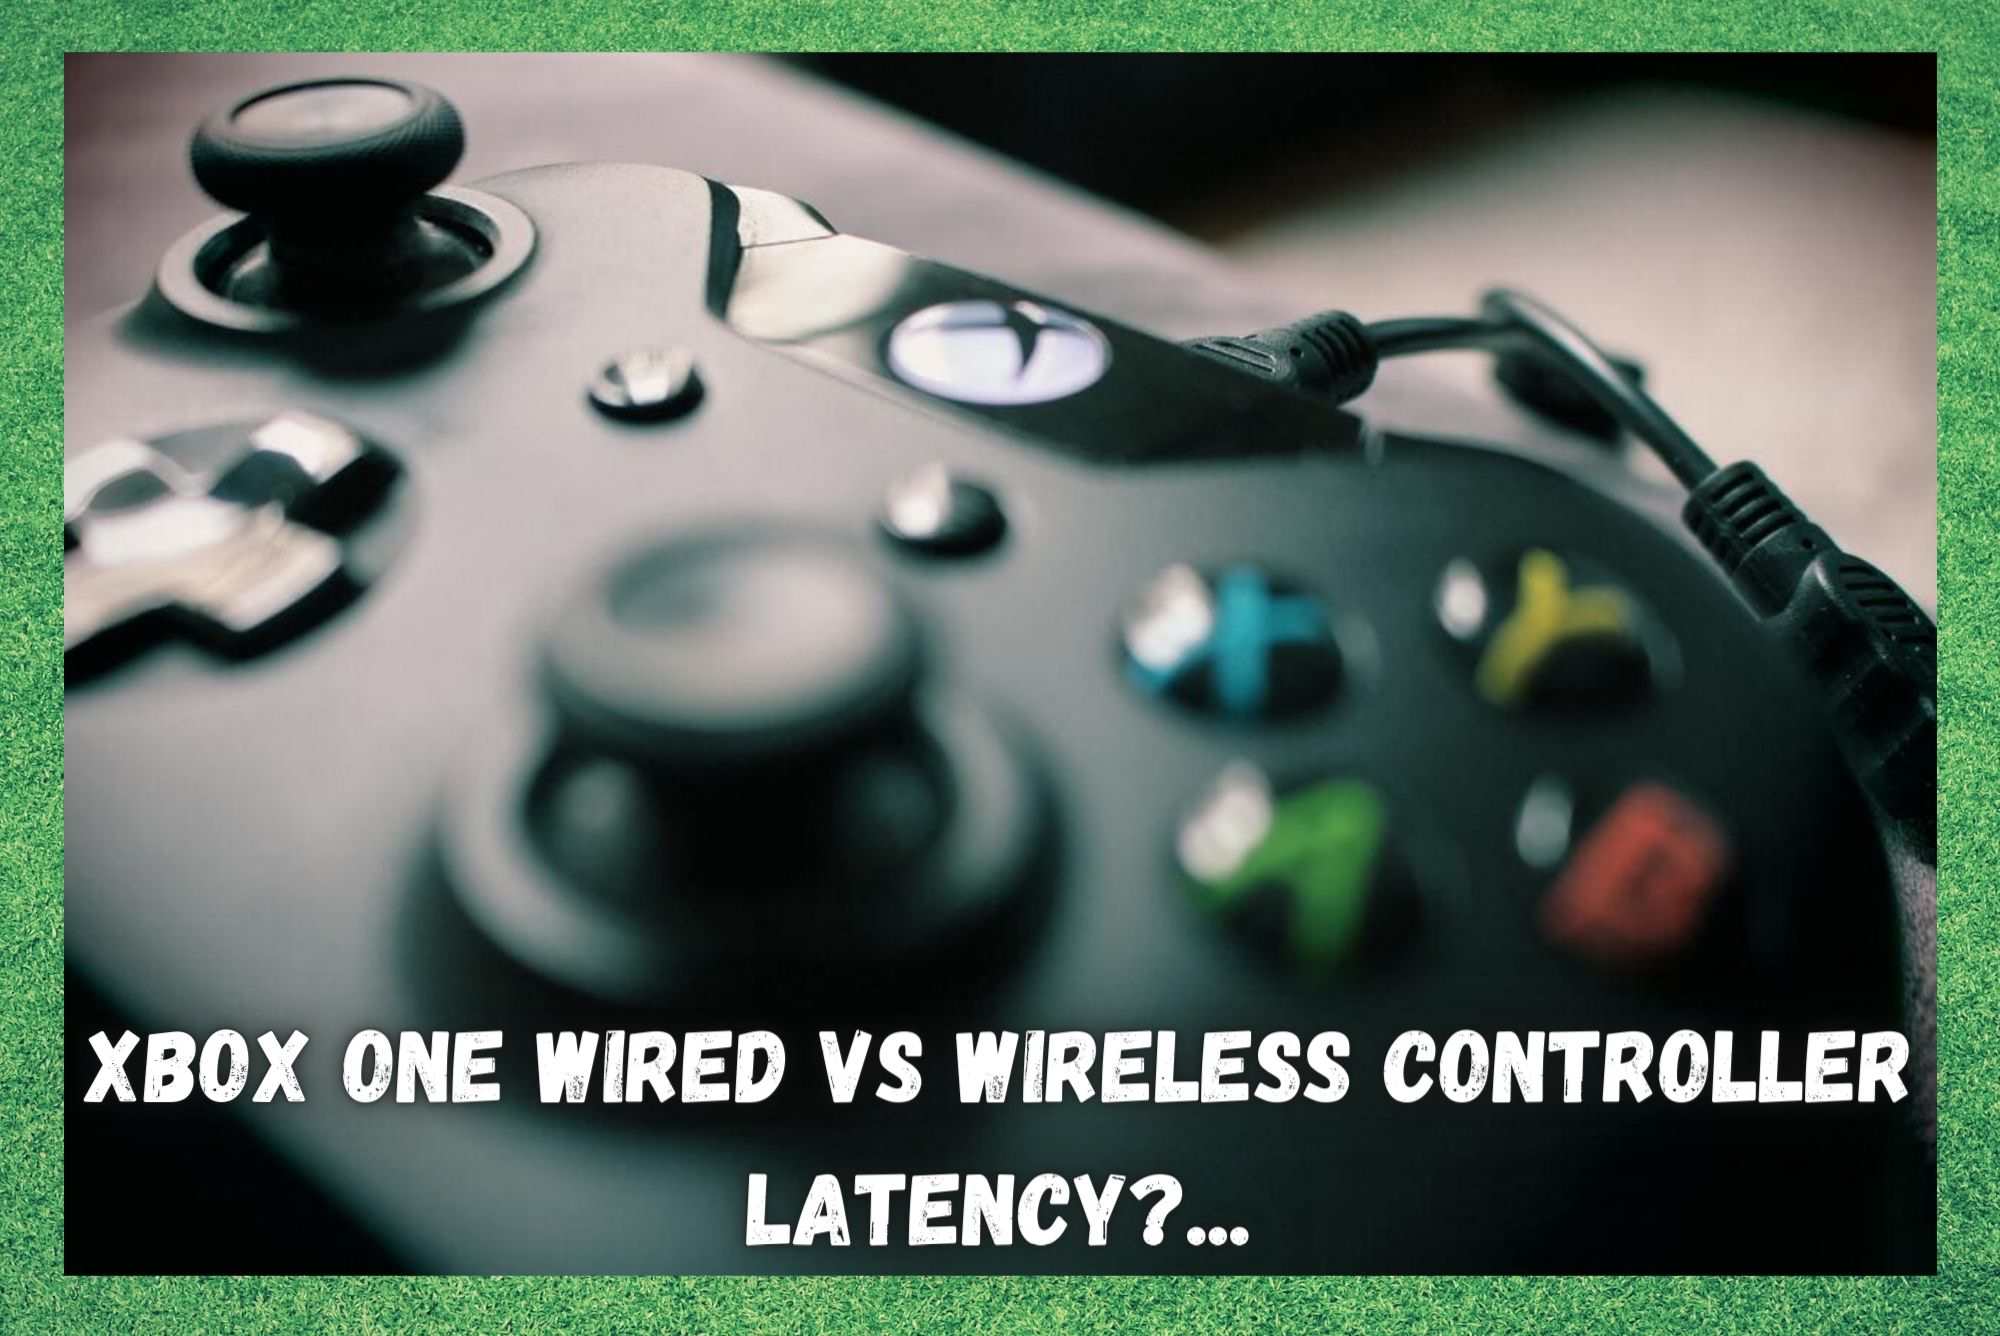 Xbox One bedraad vs draadloze controller latentie- Vergelijk beide